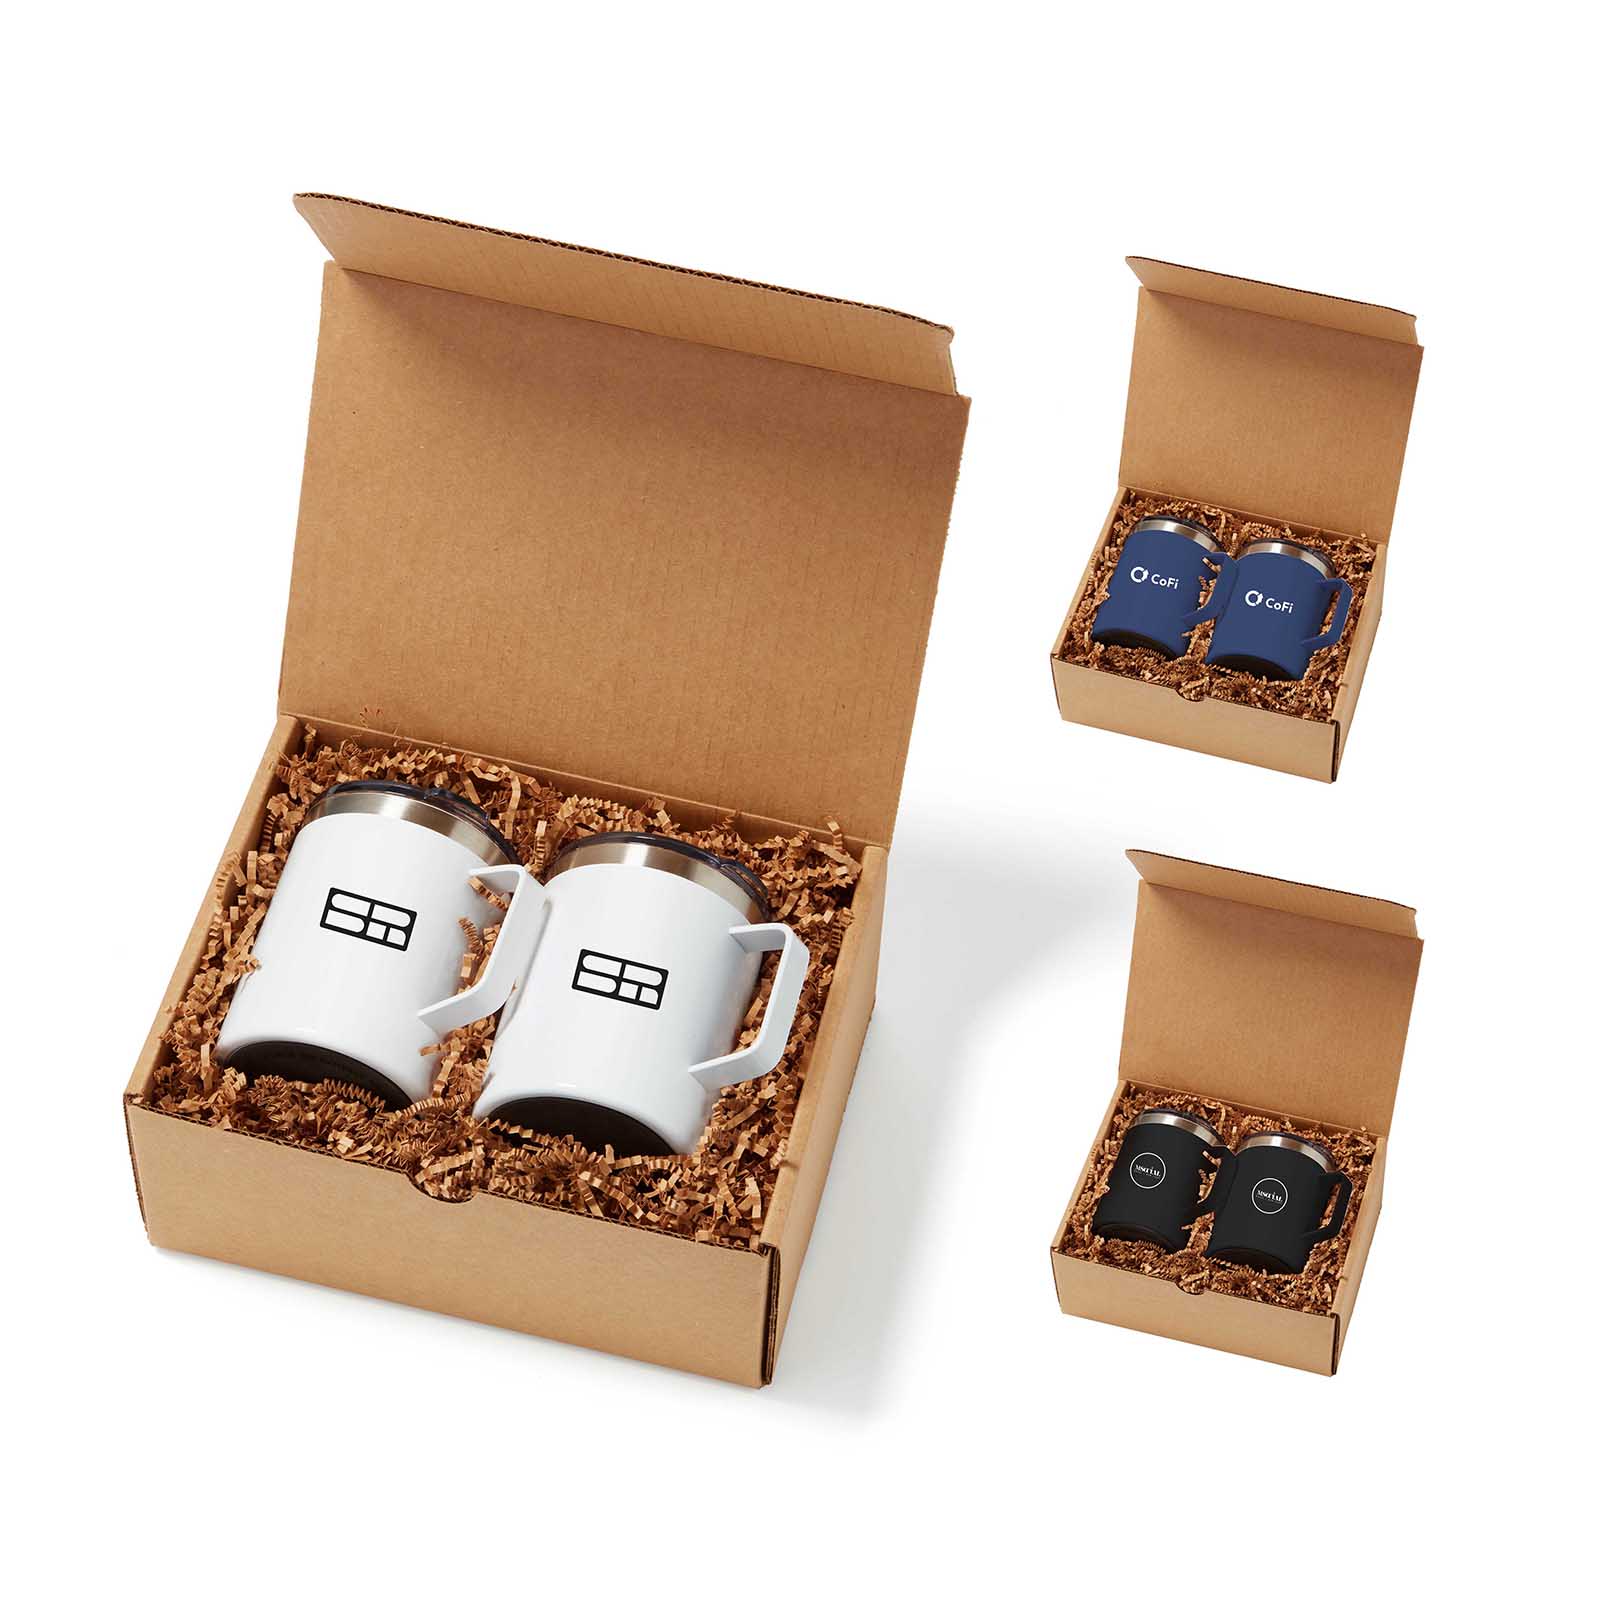 Coffee Mug Gift Set